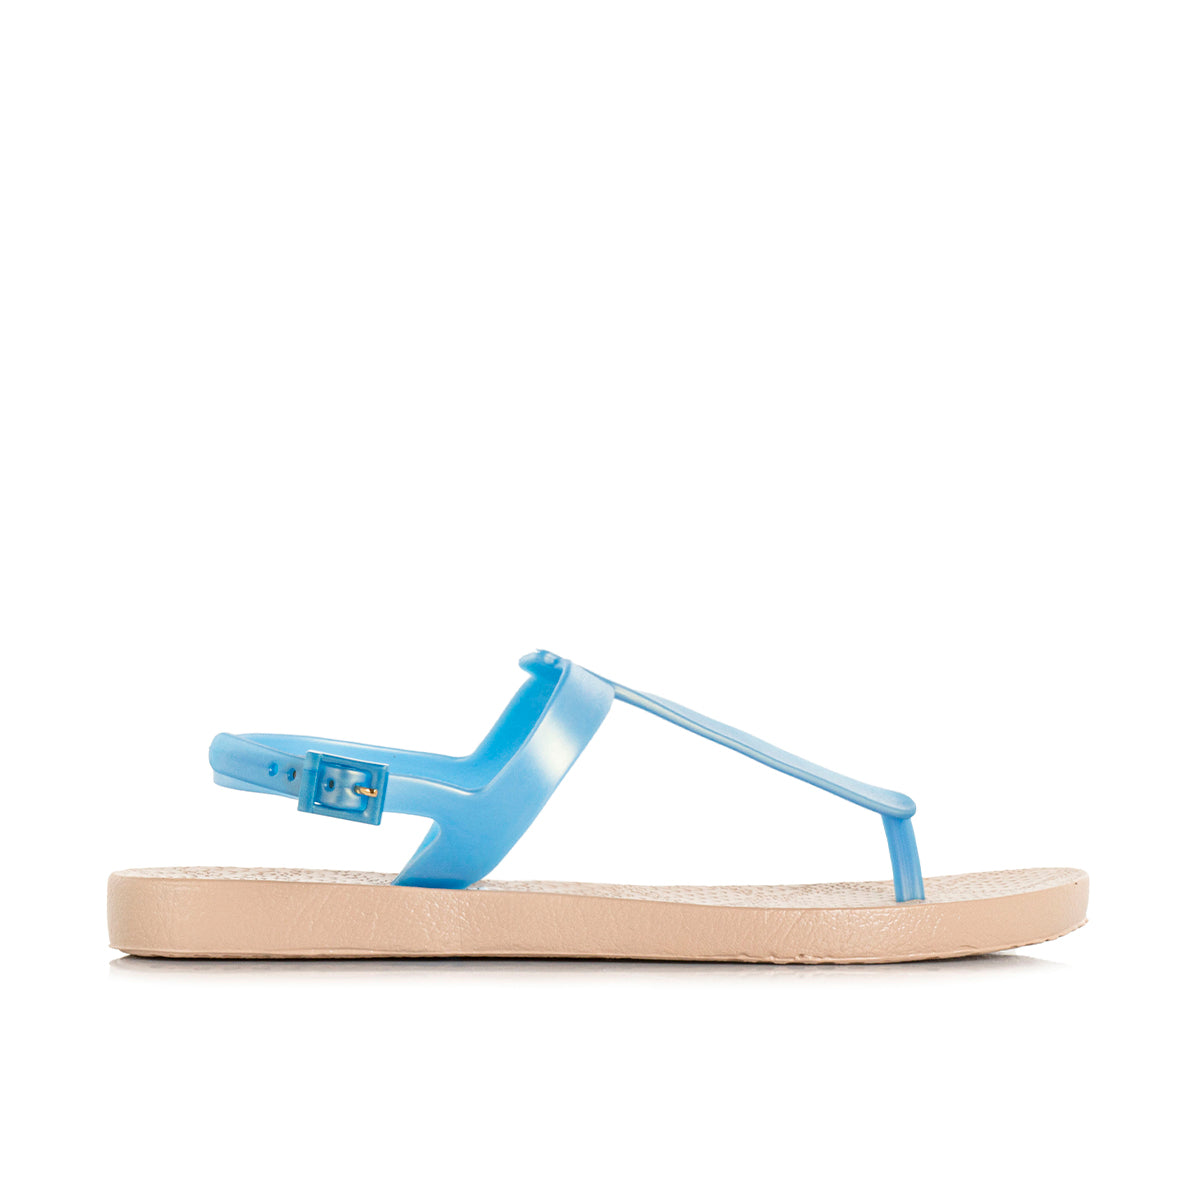 Sandalias color azul, estilo en plástico sencilla de mujer